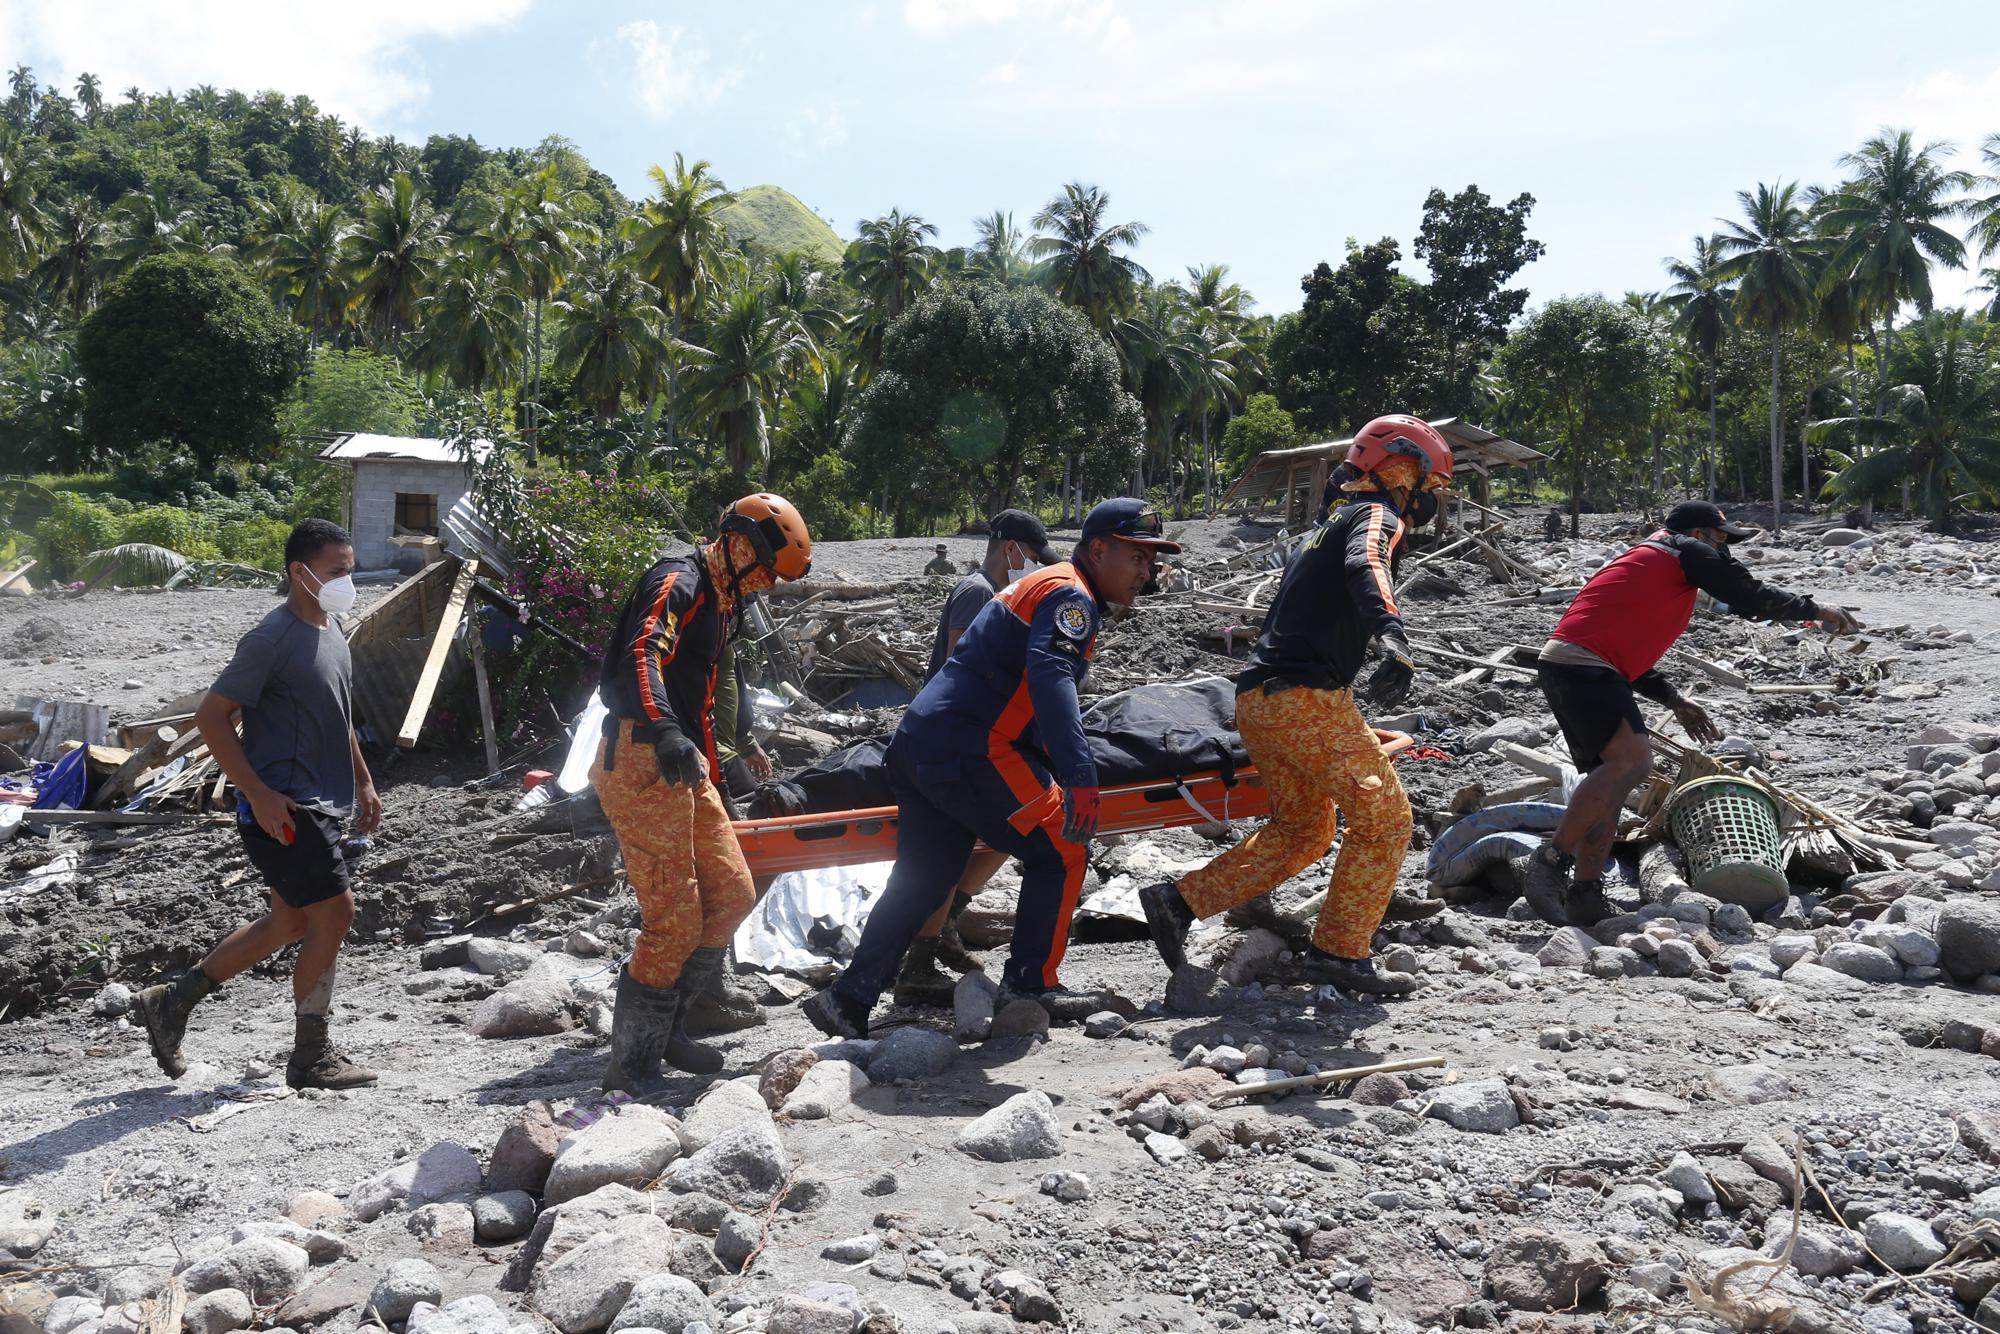 98 dead, 63 missing in floods, landslides in Philippines